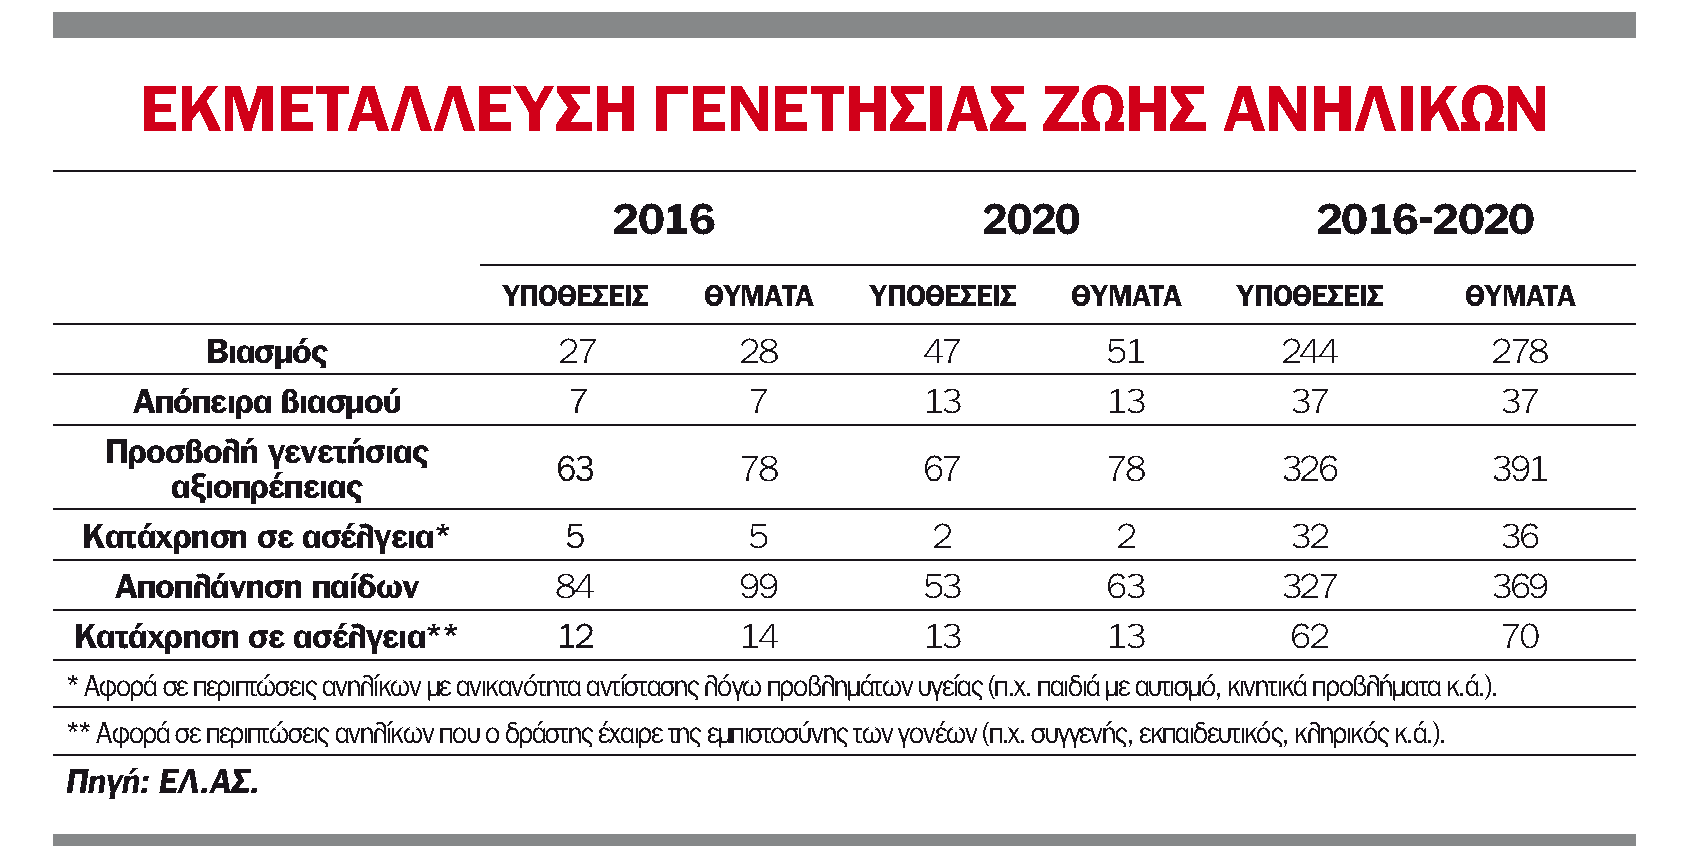 Αποκάλυψη-σοκ: Ενας ανήλικος βιάζονταν κάθε εβδομάδα του 2020 στην Ελλάδα - ΕΛΛΑΔΑ